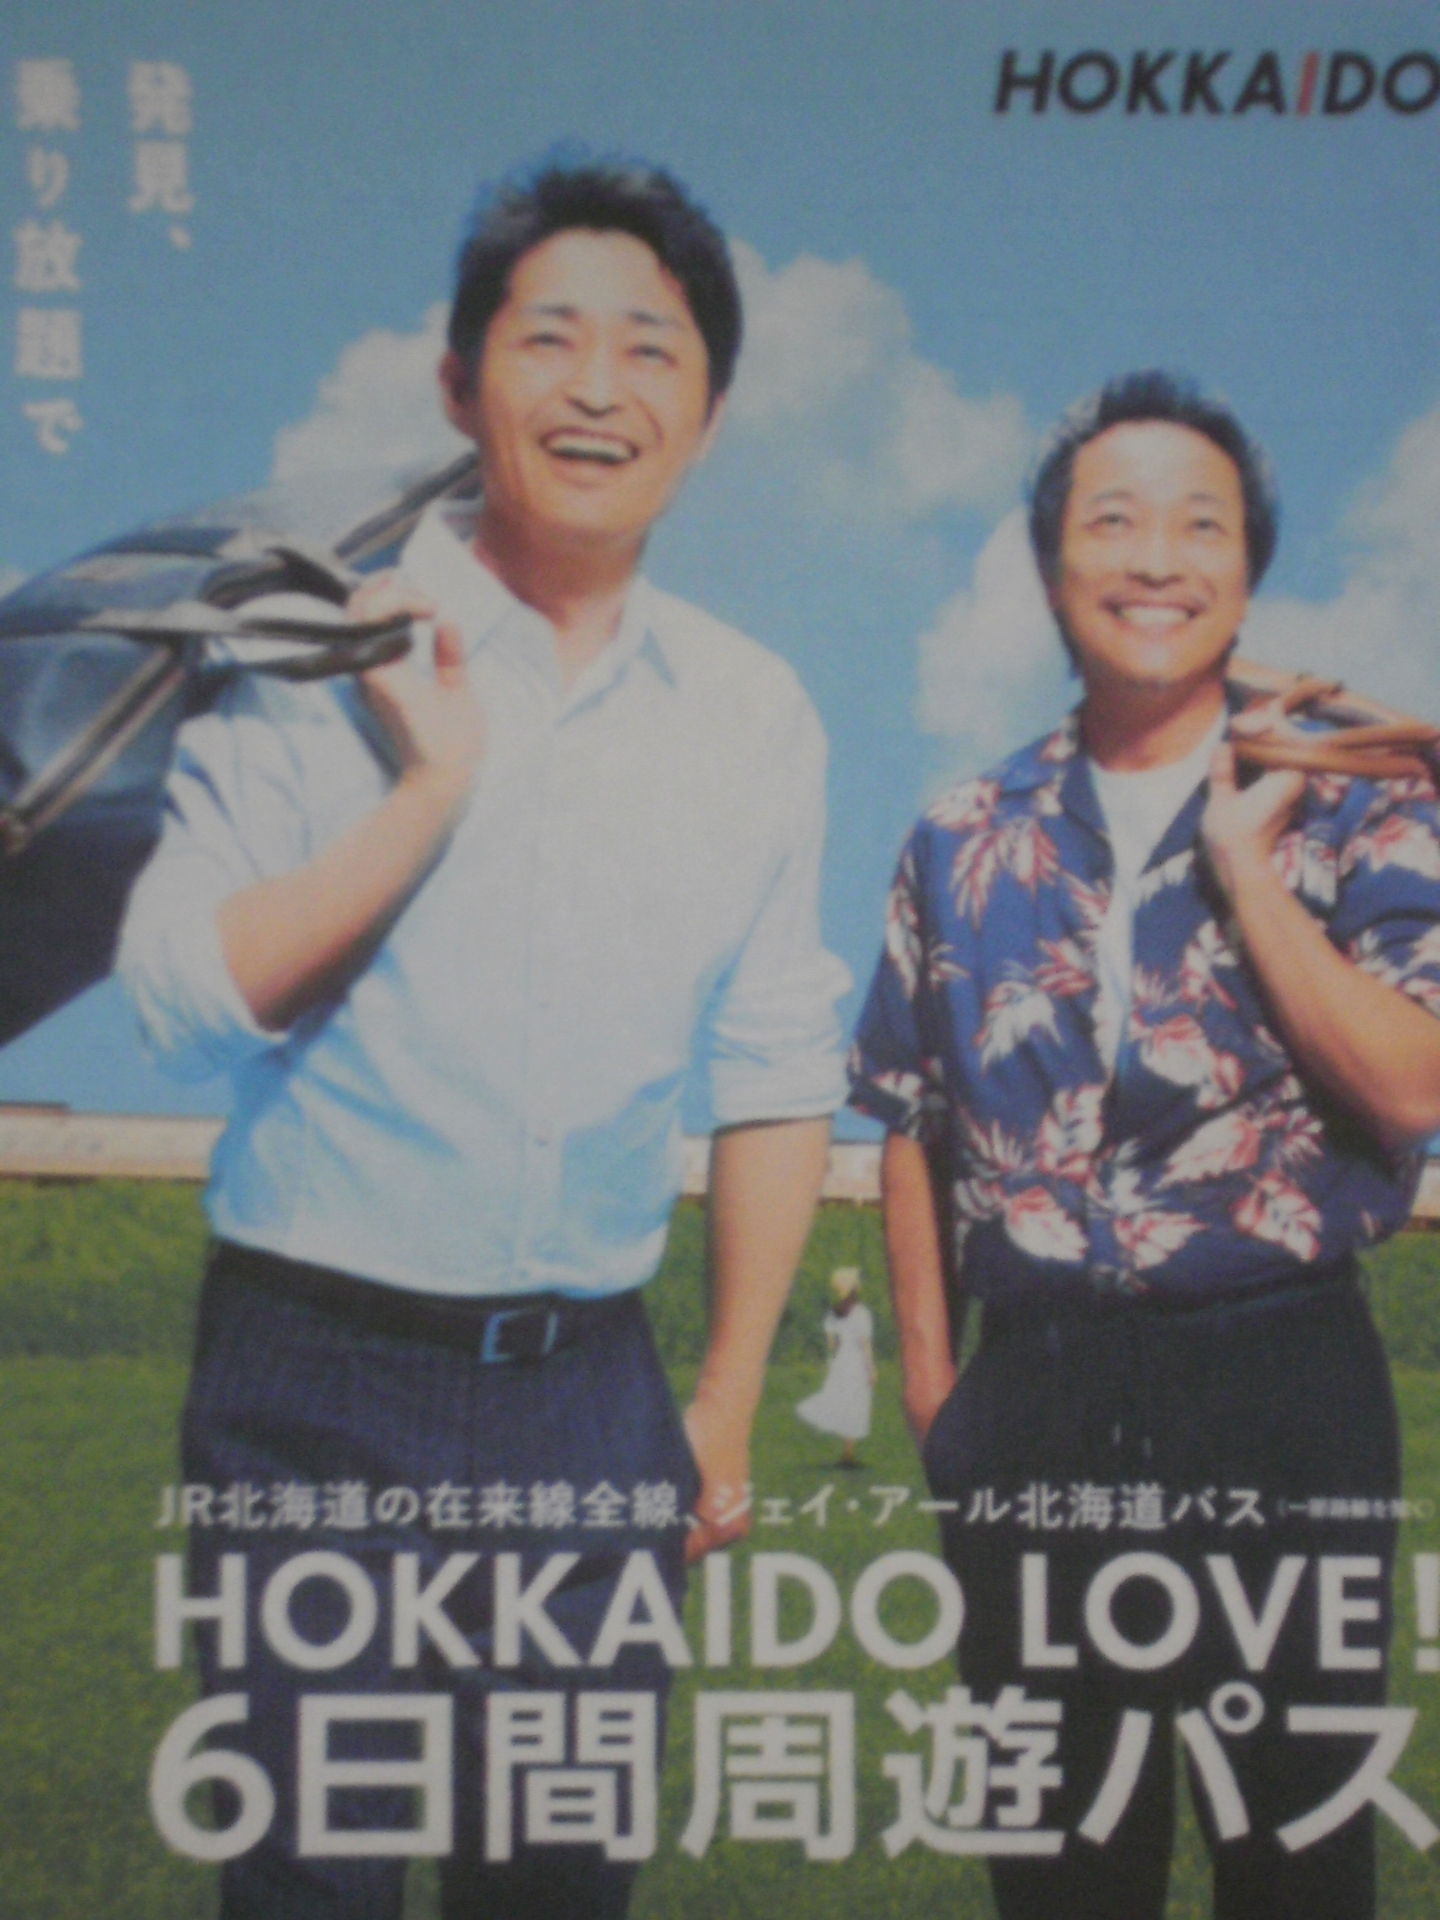 お得限定SALEHOKKAIDO LOVE! 6日間周遊パス JR北海道 フリーパス 2枚 鉄道乗車券